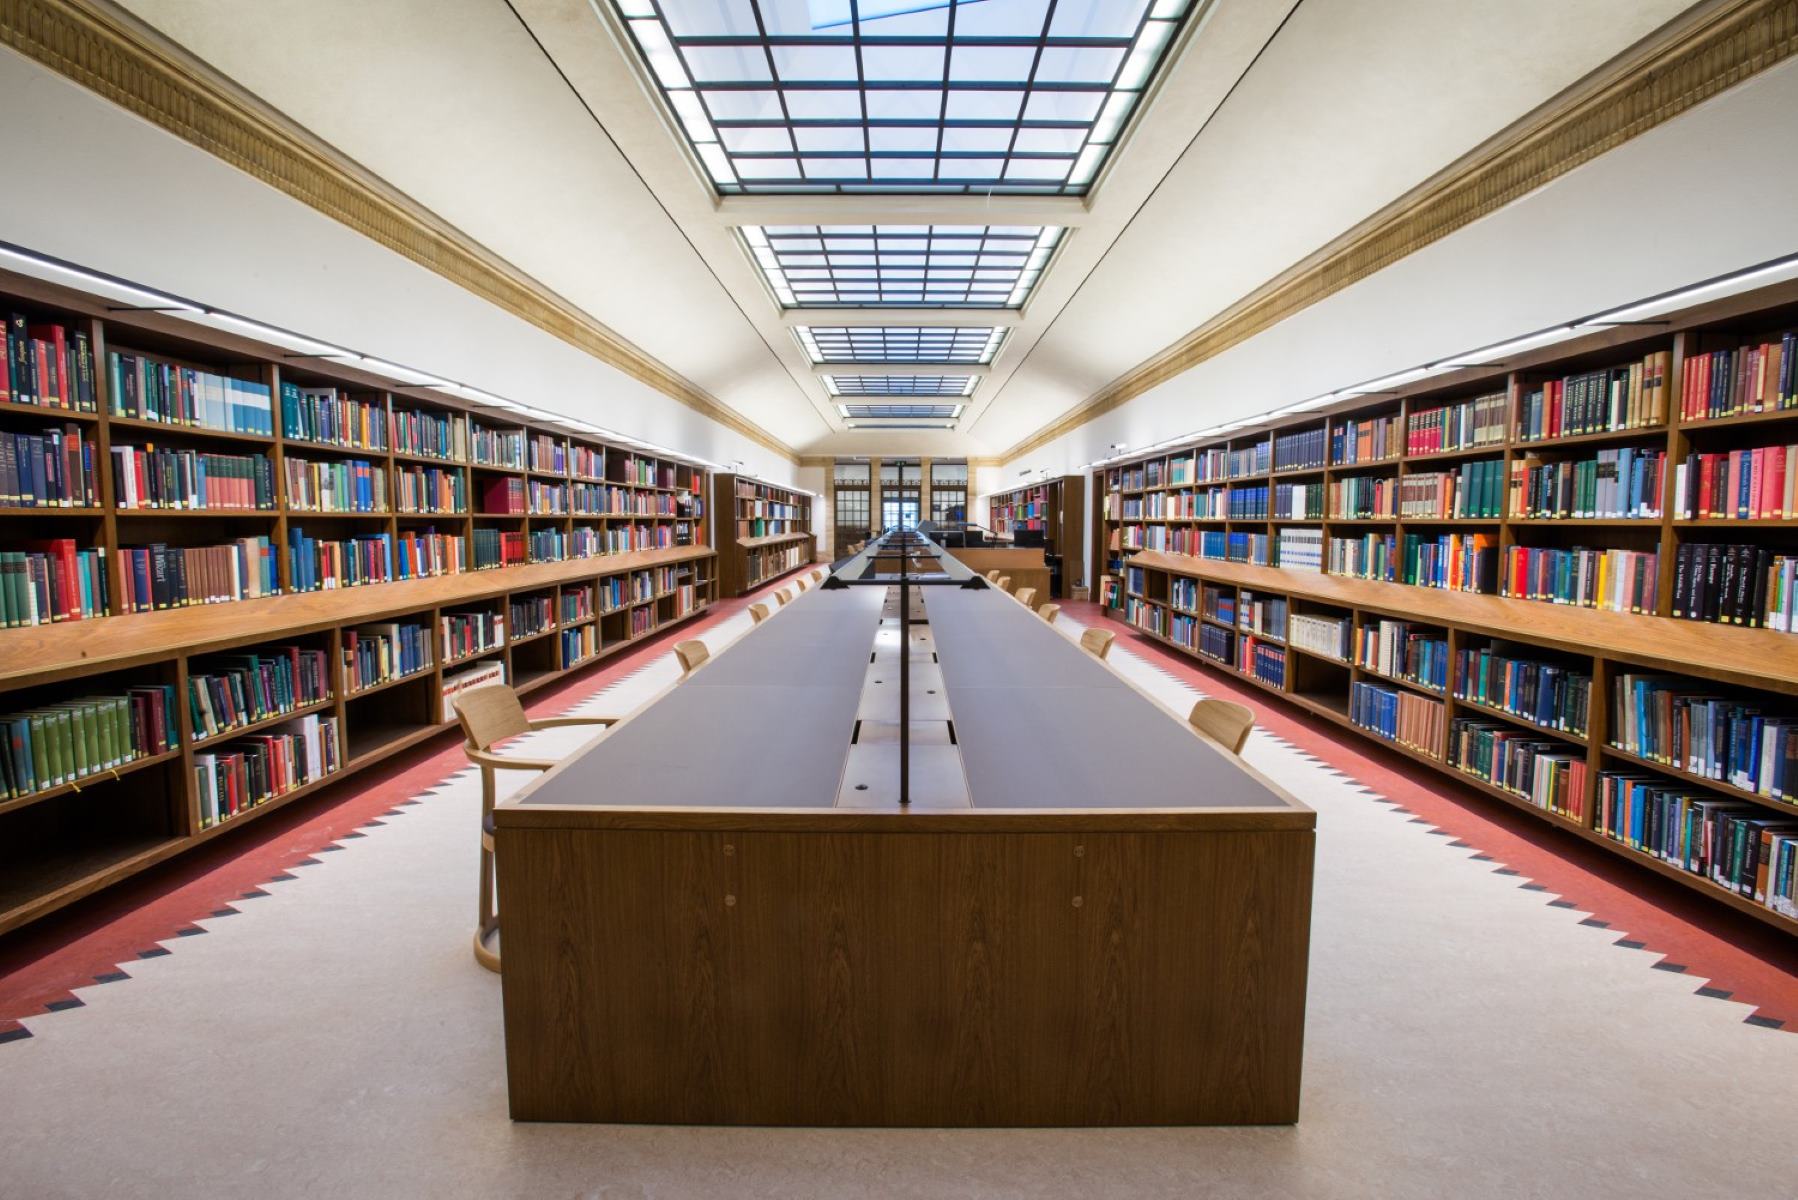 Platform library. Оксфордский университет библиотека. Йельский университет библиотека. Красивая библиотека. Красивые читальные залы.